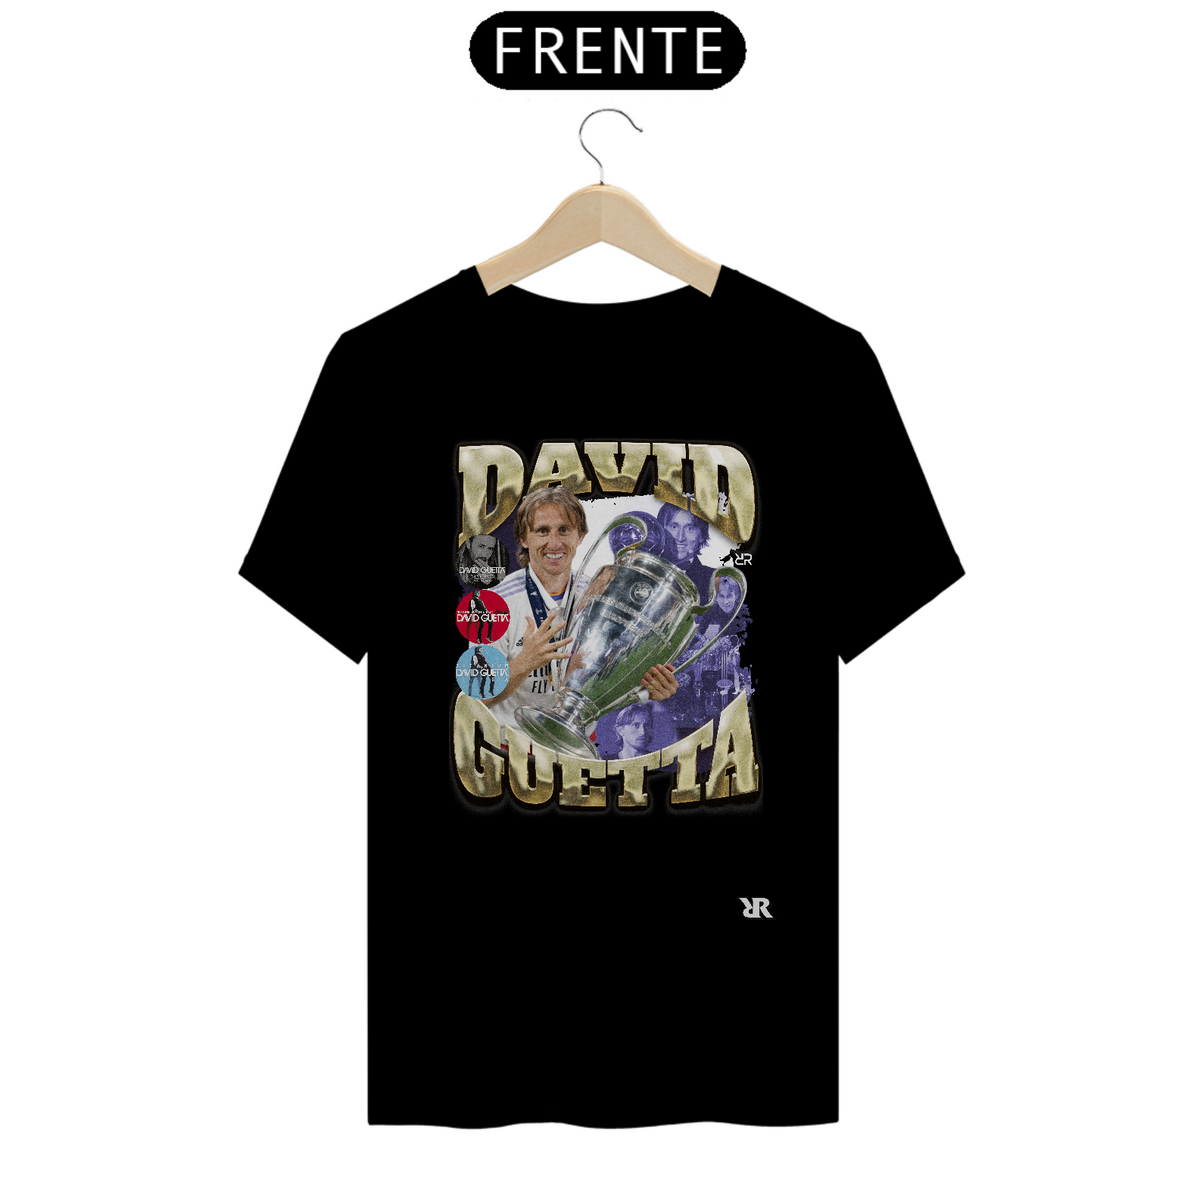 Nome do produto: David Guetta - Retro Style